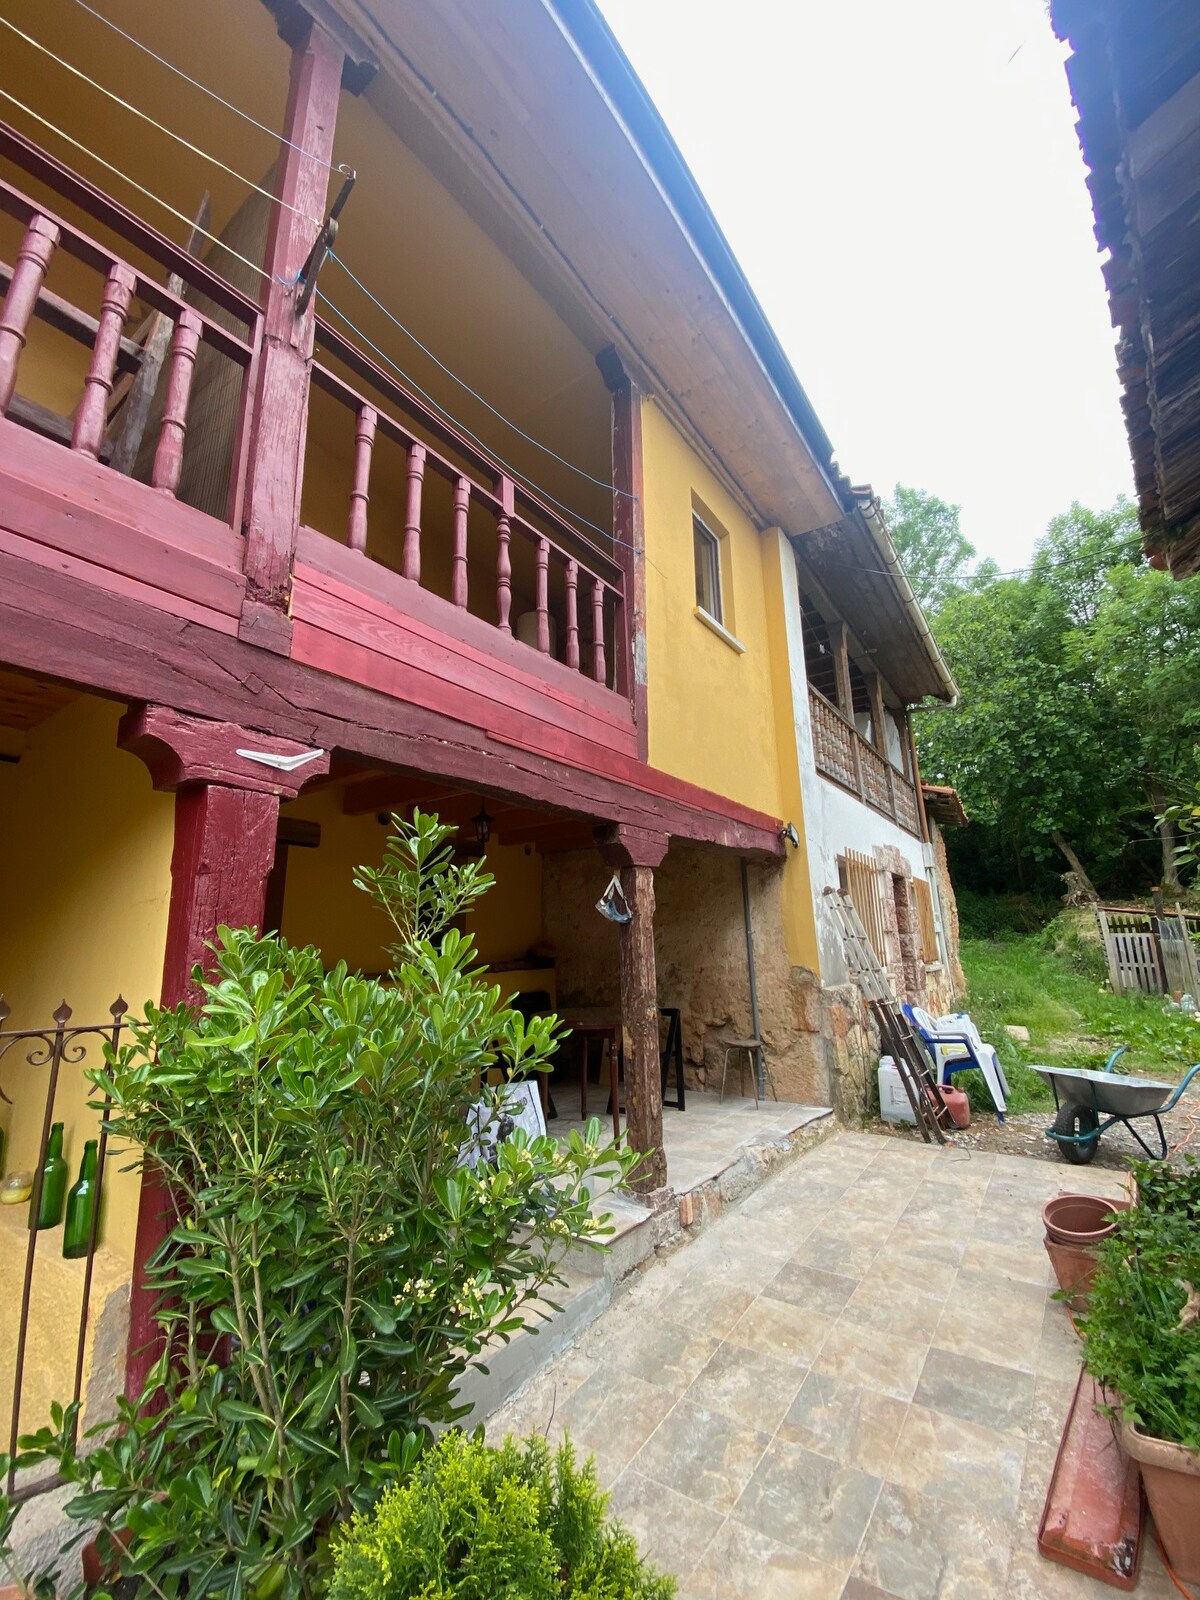 Casa Rural Cangas de Onís （ 2020年模范村庄）